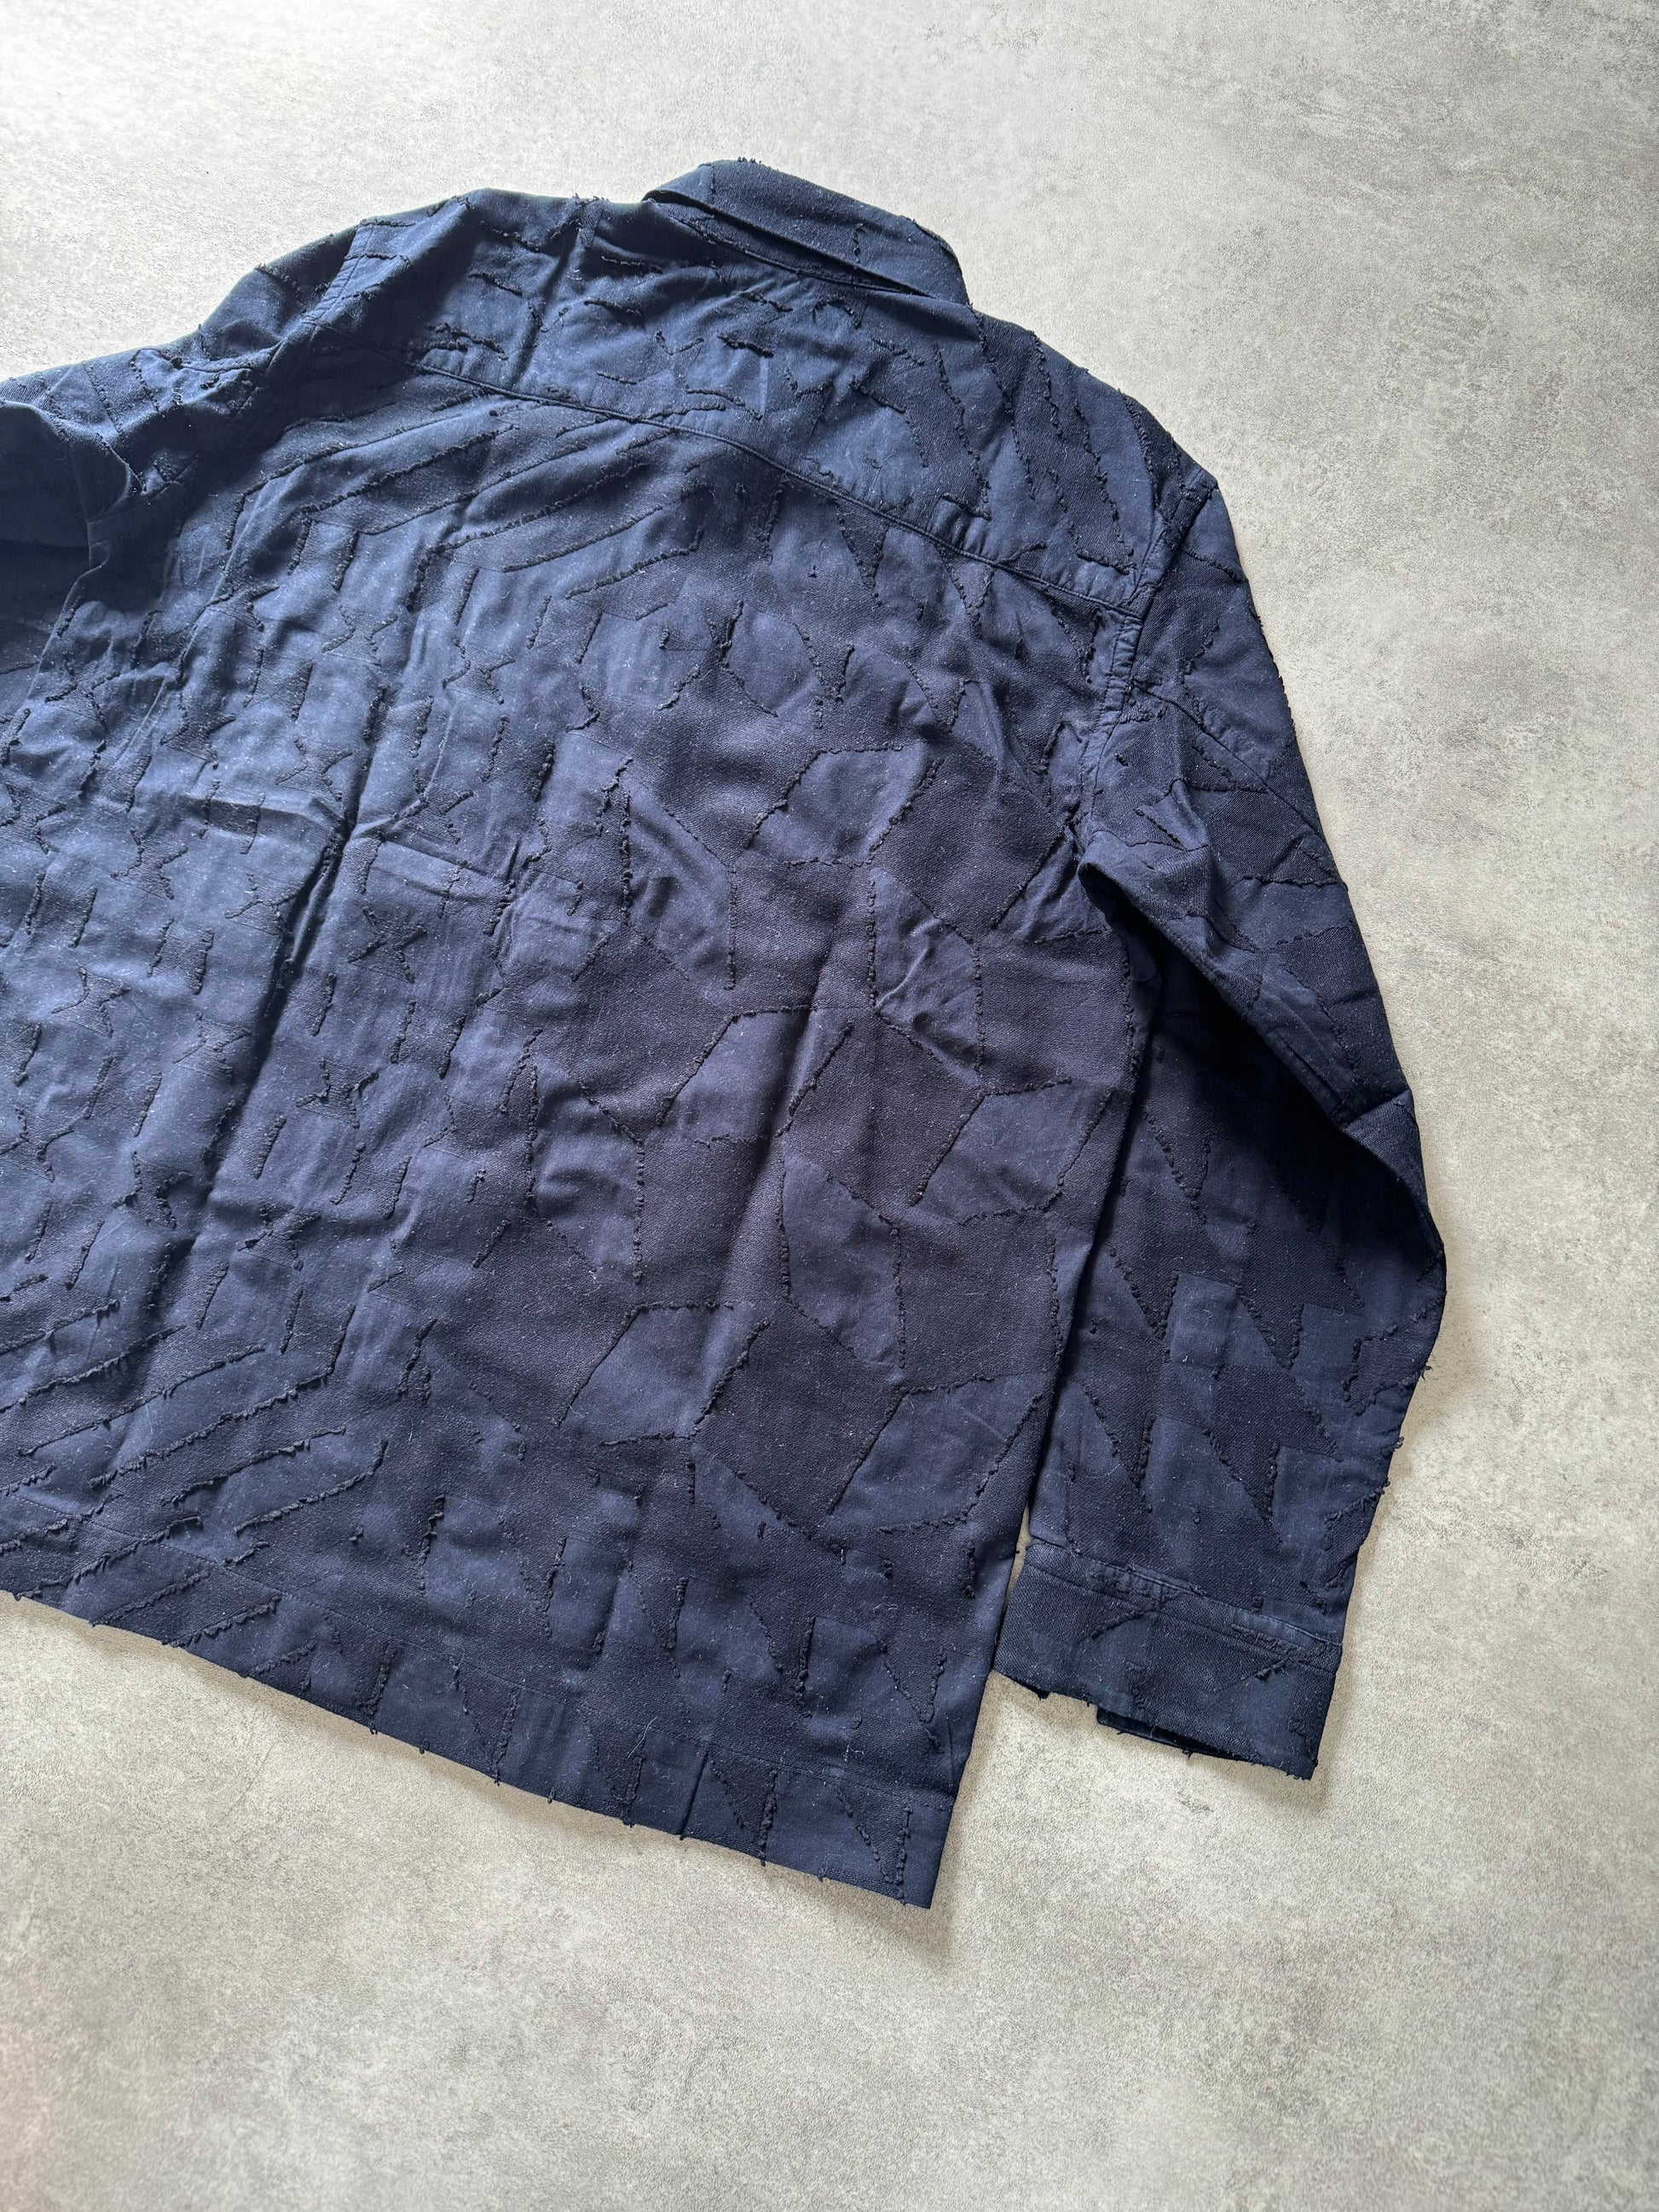 Issey Miyake Blue Deconstructed Geo Shirt (M) - 5